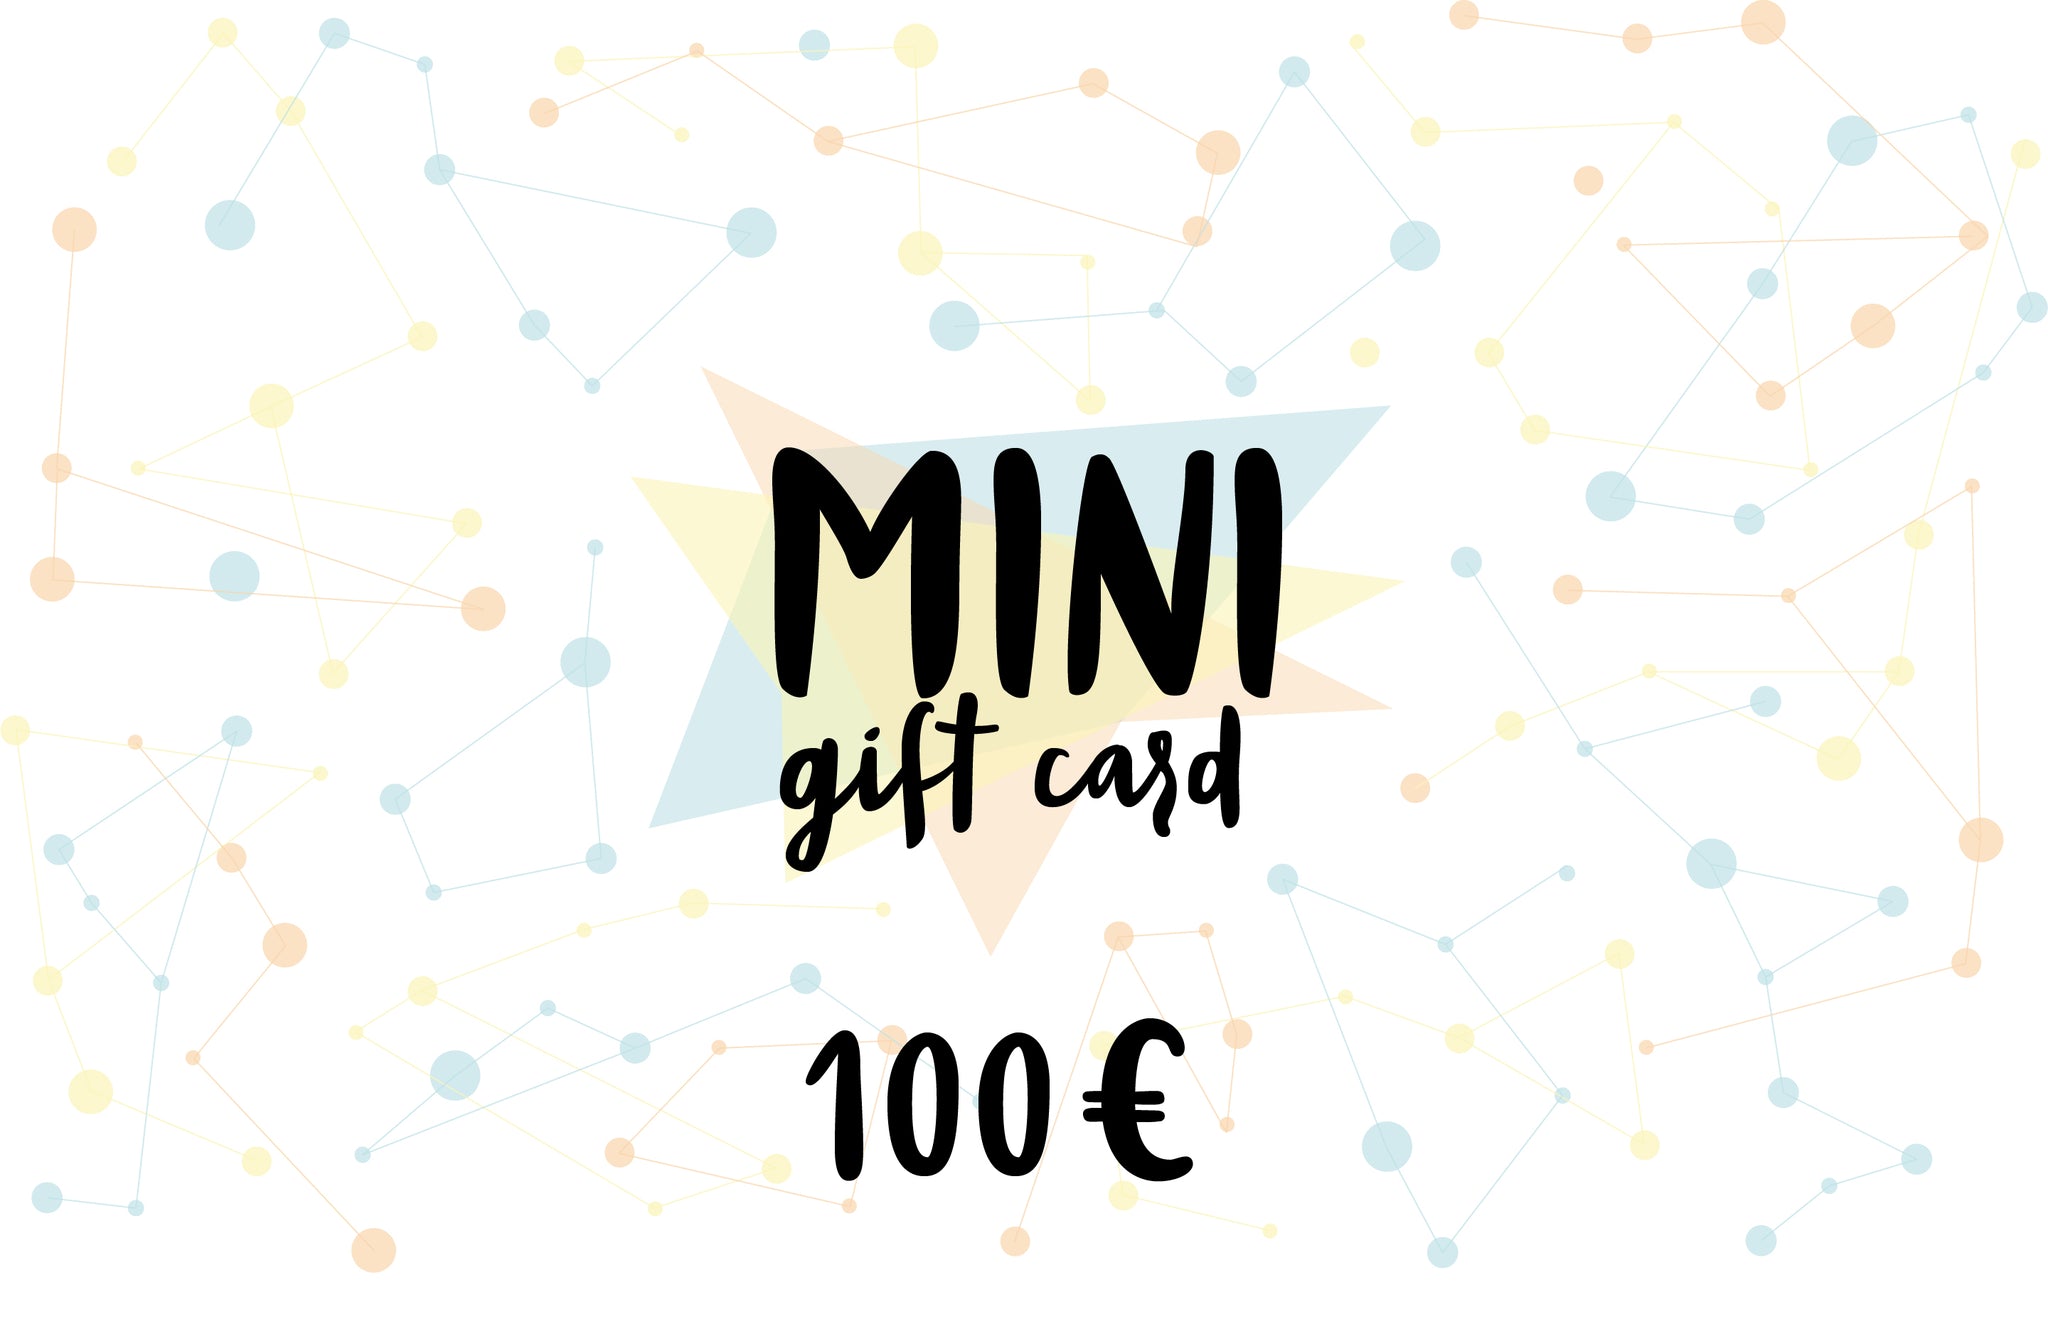 MINI Gift card, value of 100 euro